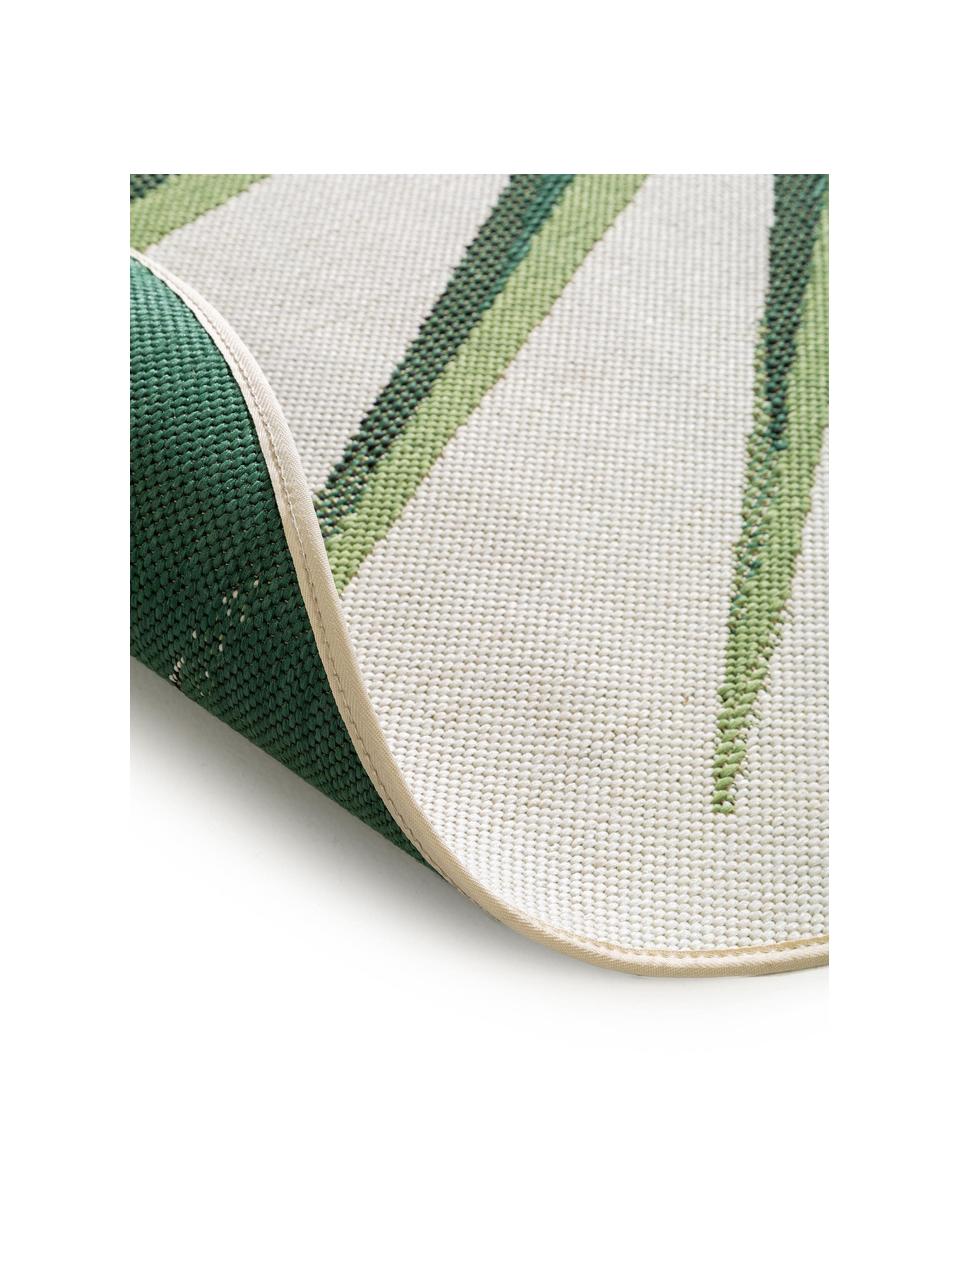 Runder In- & Outdoor-Teppich Capri mit Blattmotiv, 100% Polypropylen, Grün, Beige, Ø 160 cm (Größe L)